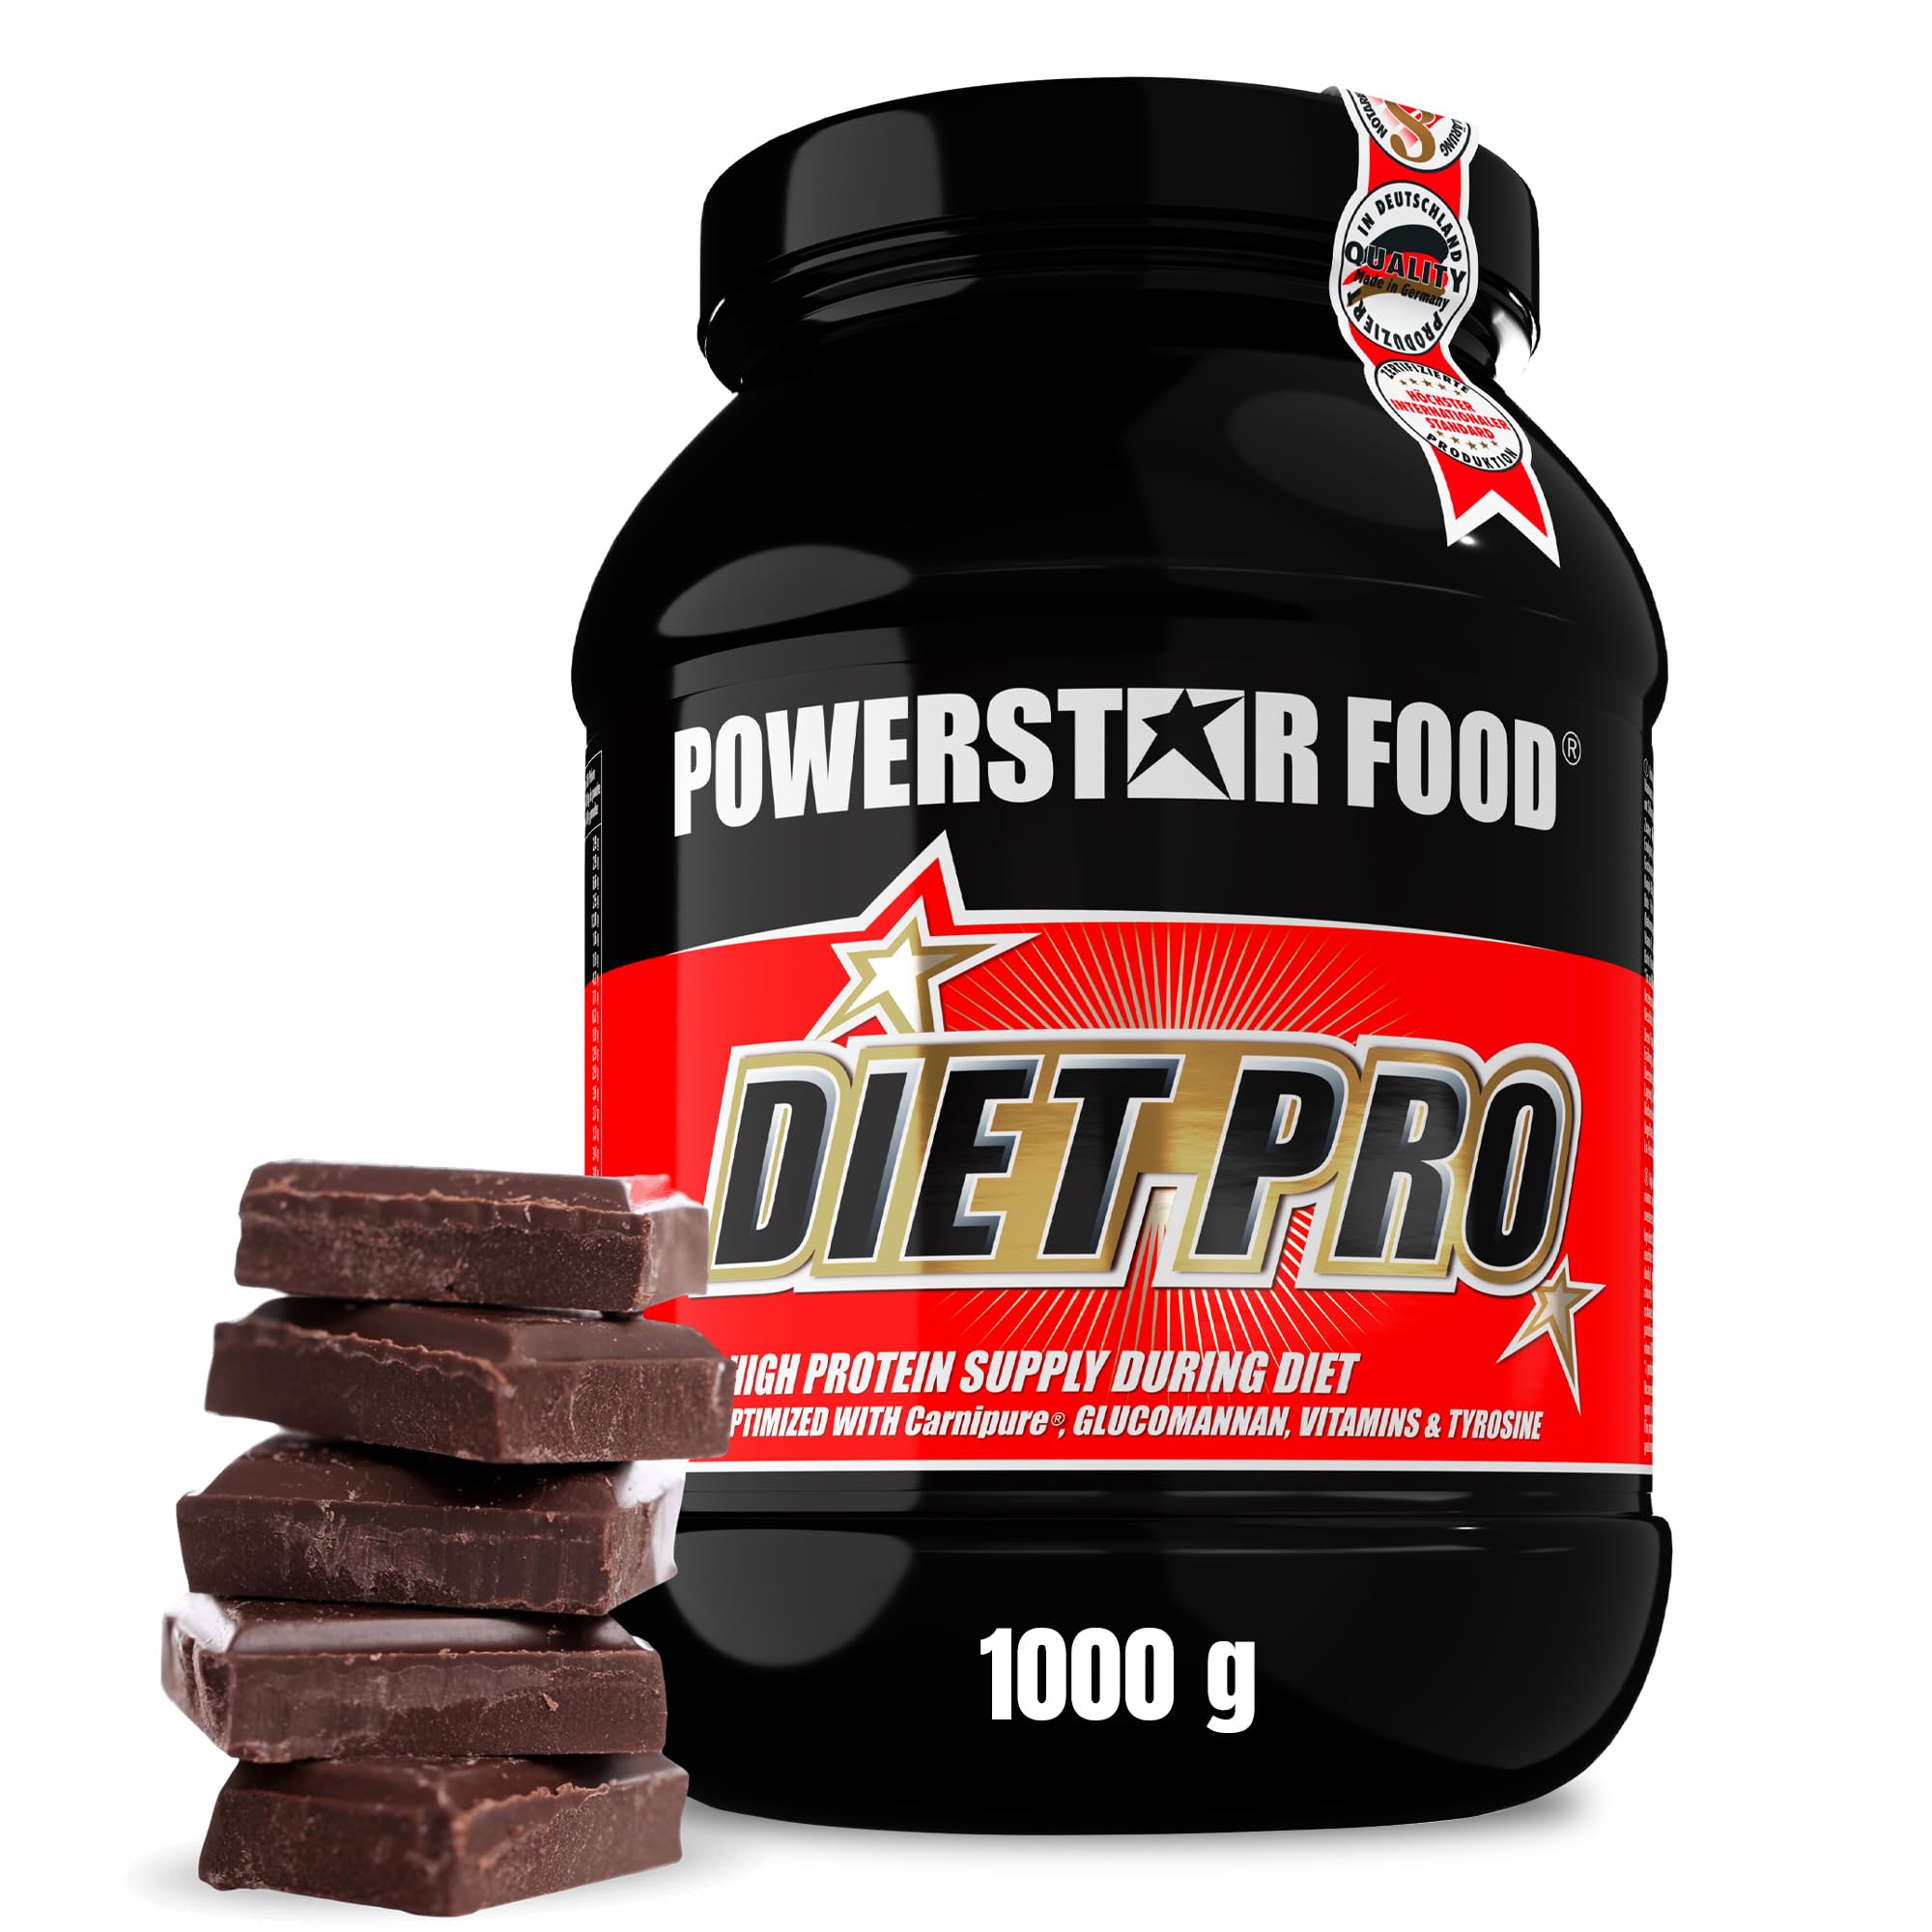 Powerstar Diet Pro 1kg | Diät-Protein-Pulver | Deutscher Herstellung | Mehrkomponenten-Protein-Pulver | Konservierung der Muskelmasse | Sättigender Diät-Eiweiß-Shake mit Glucomannan | Chocolate